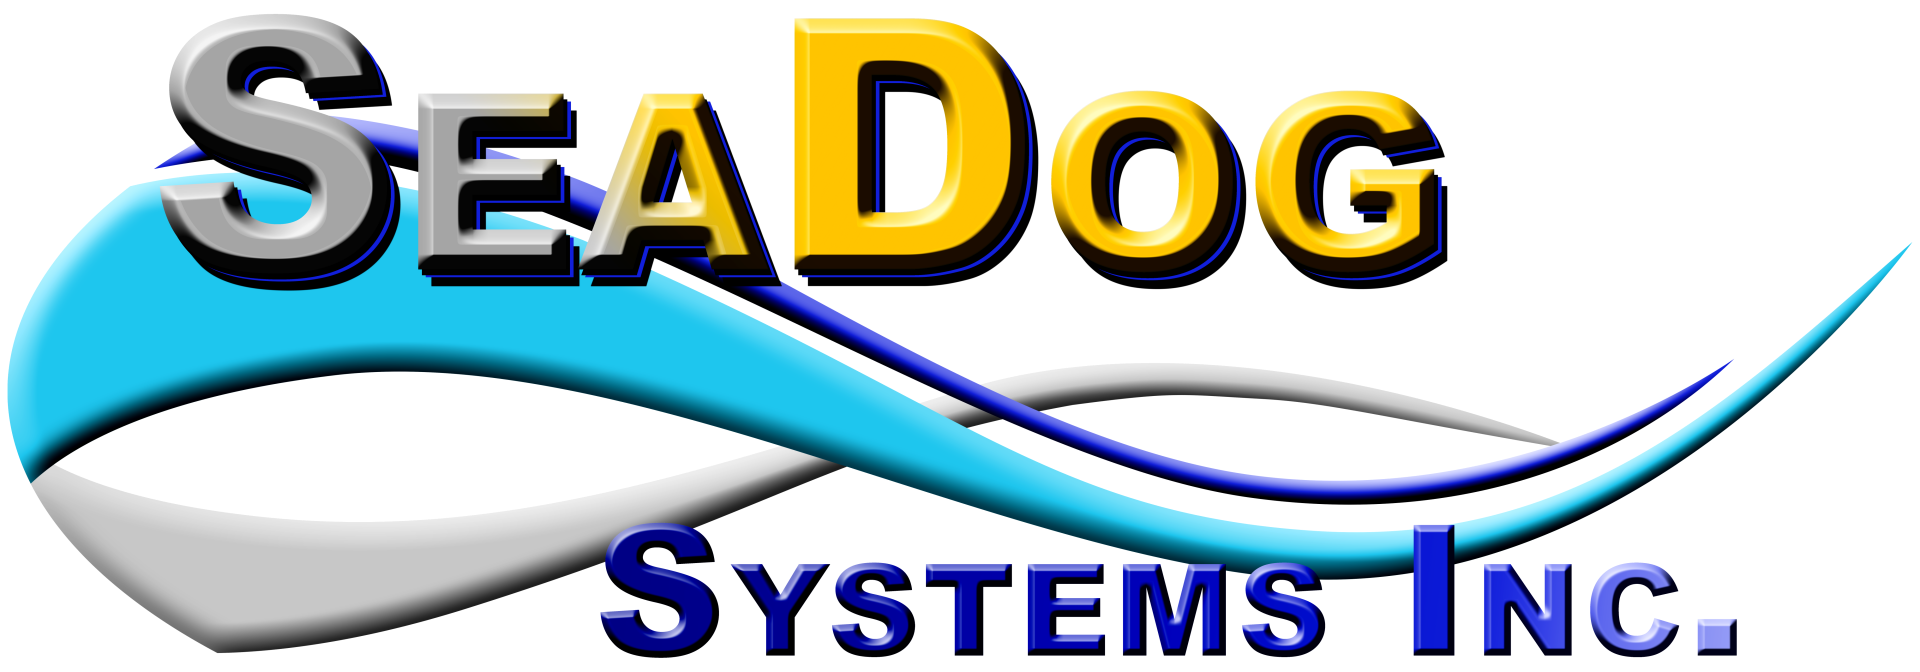 SeaDog Systems, Inc.